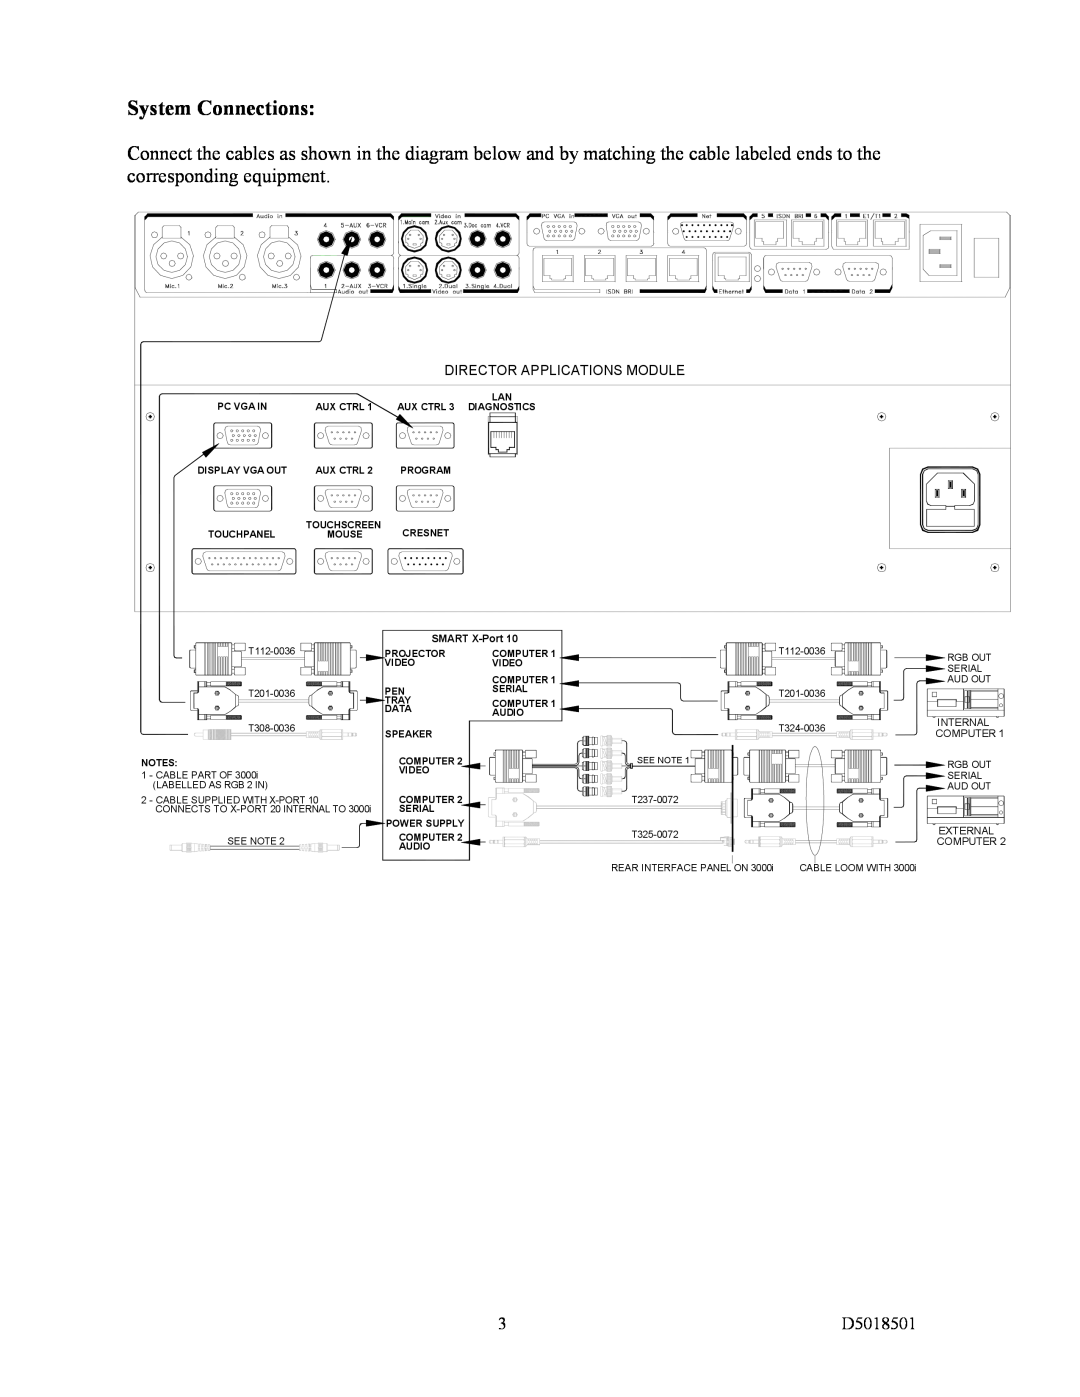 TANDBERG D5018501 System Connections, Director Applications Module, SMART X-Port, Internal, Computer, External 